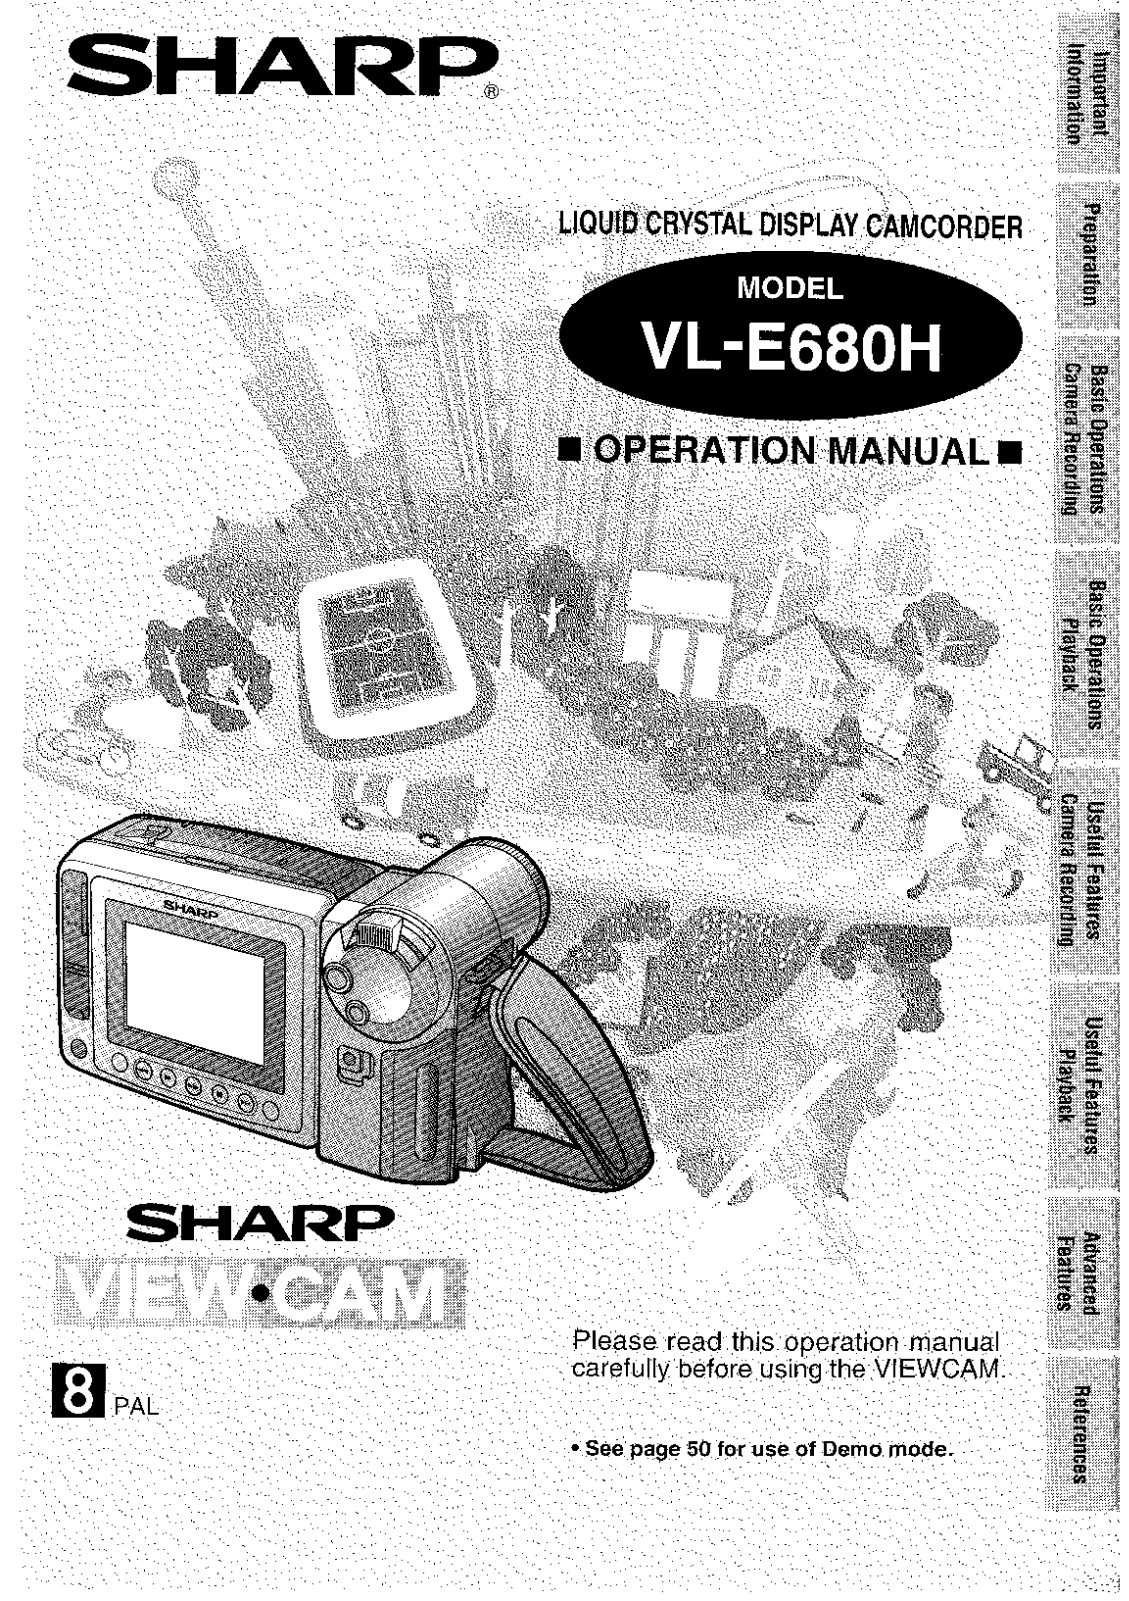 Sharp VL-E680H Manual